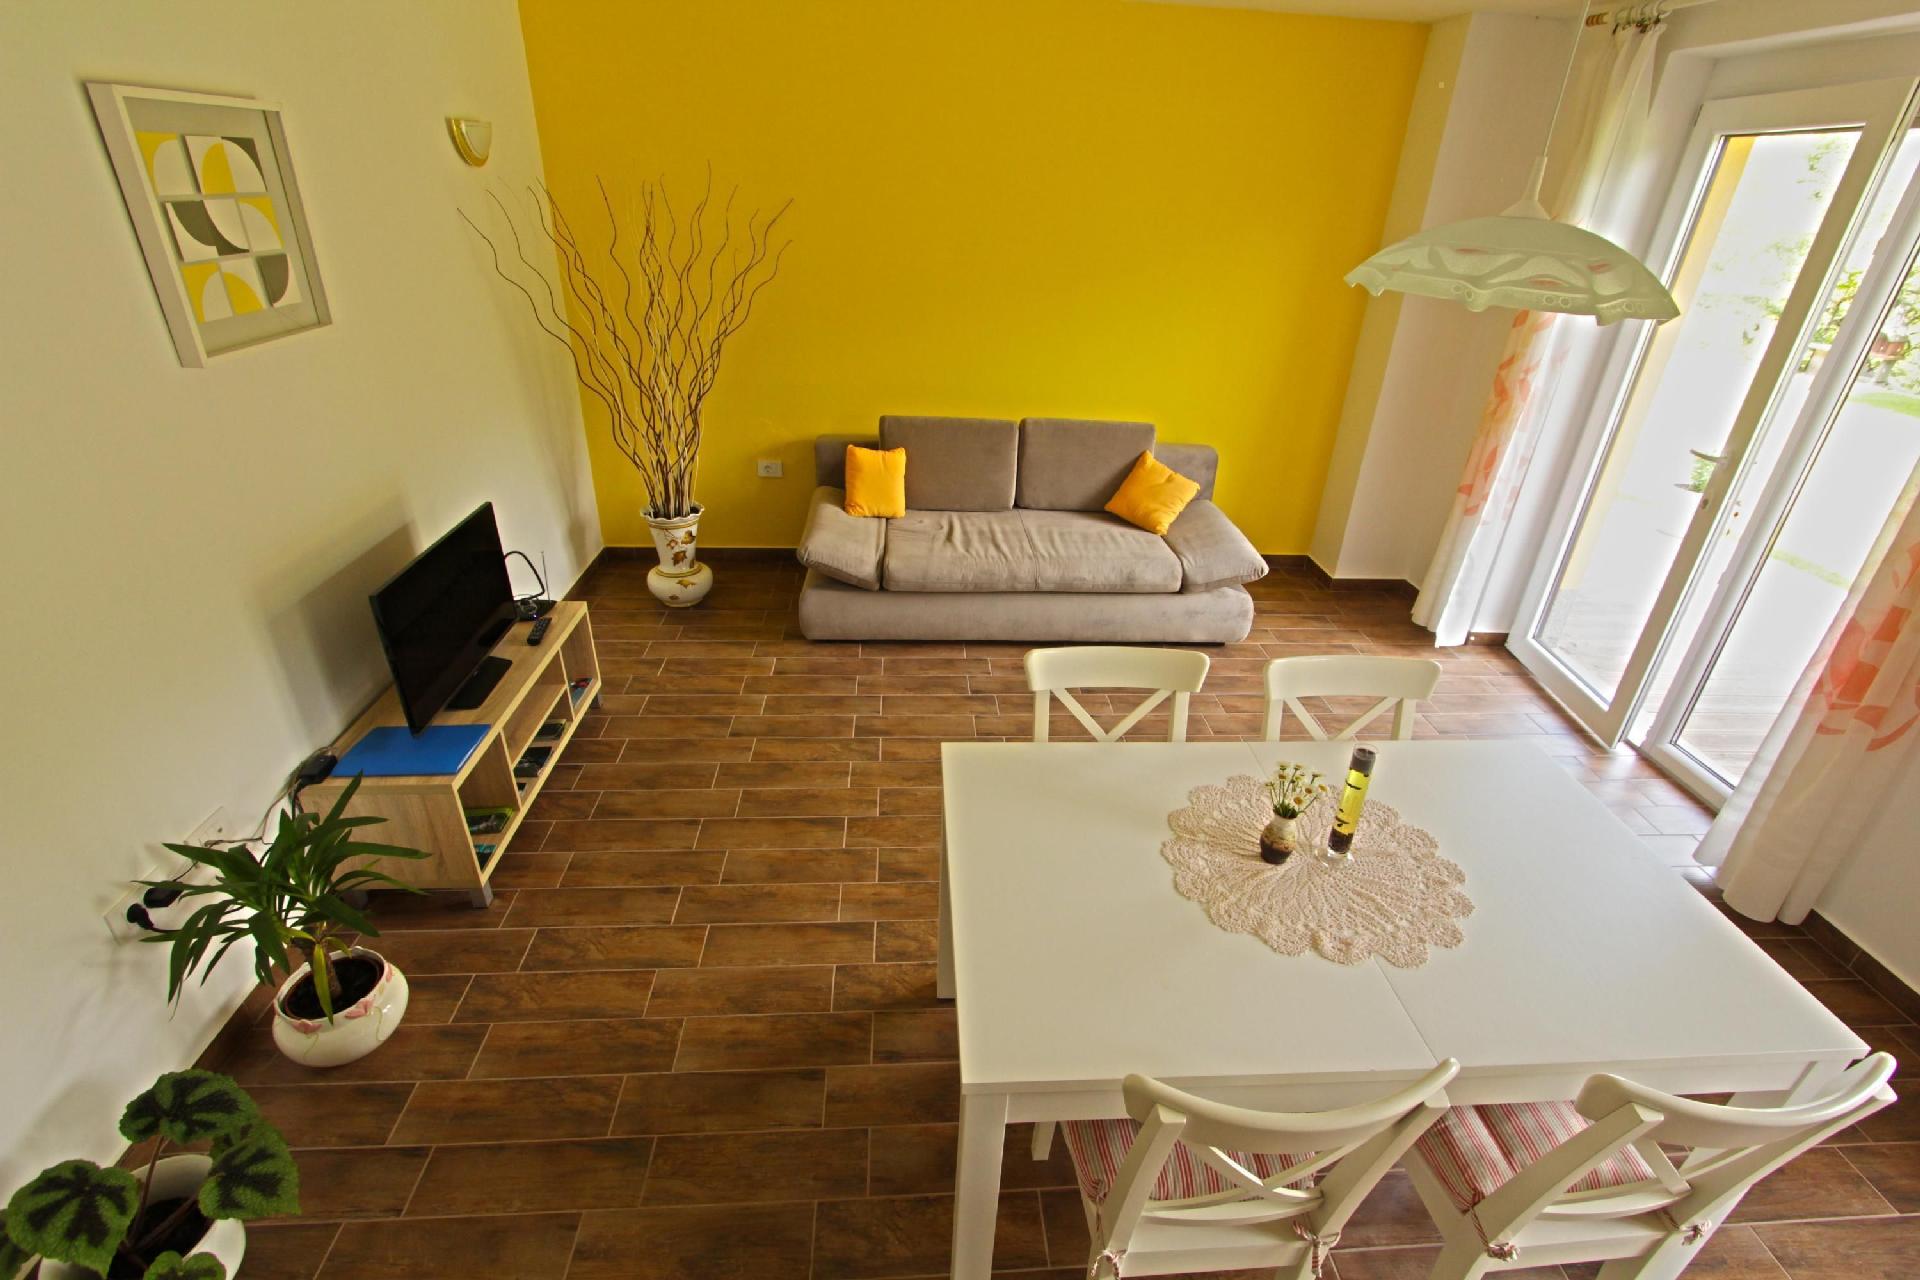 Appartement in Kamno mit Gemeinsamer Terrasse Ferienhaus in Slowenien